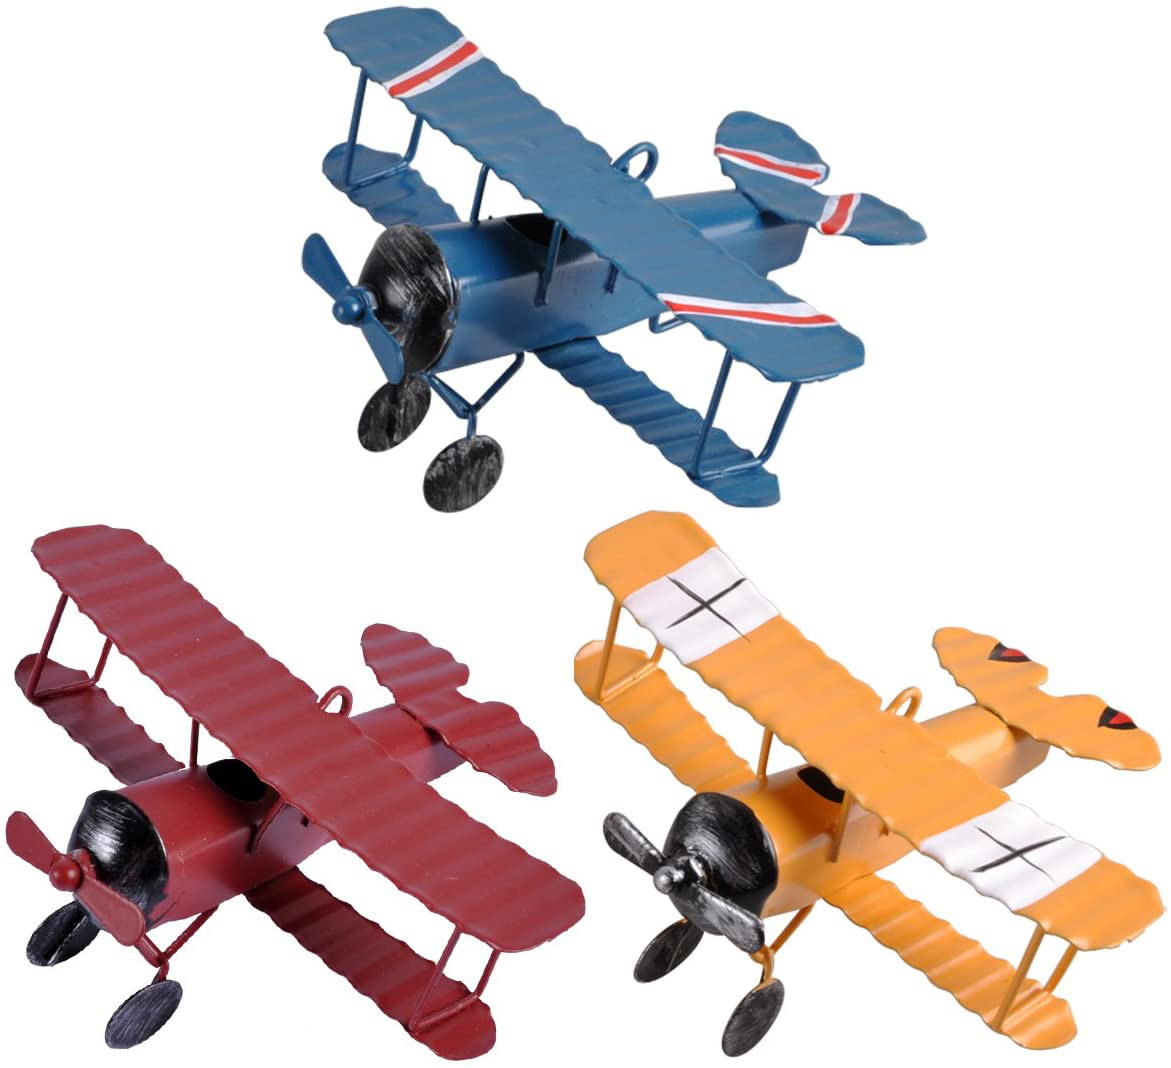 eZAKKA Airplane Decor Hanging Airplane Ornament Vintage Mini Metal Airplane Toys